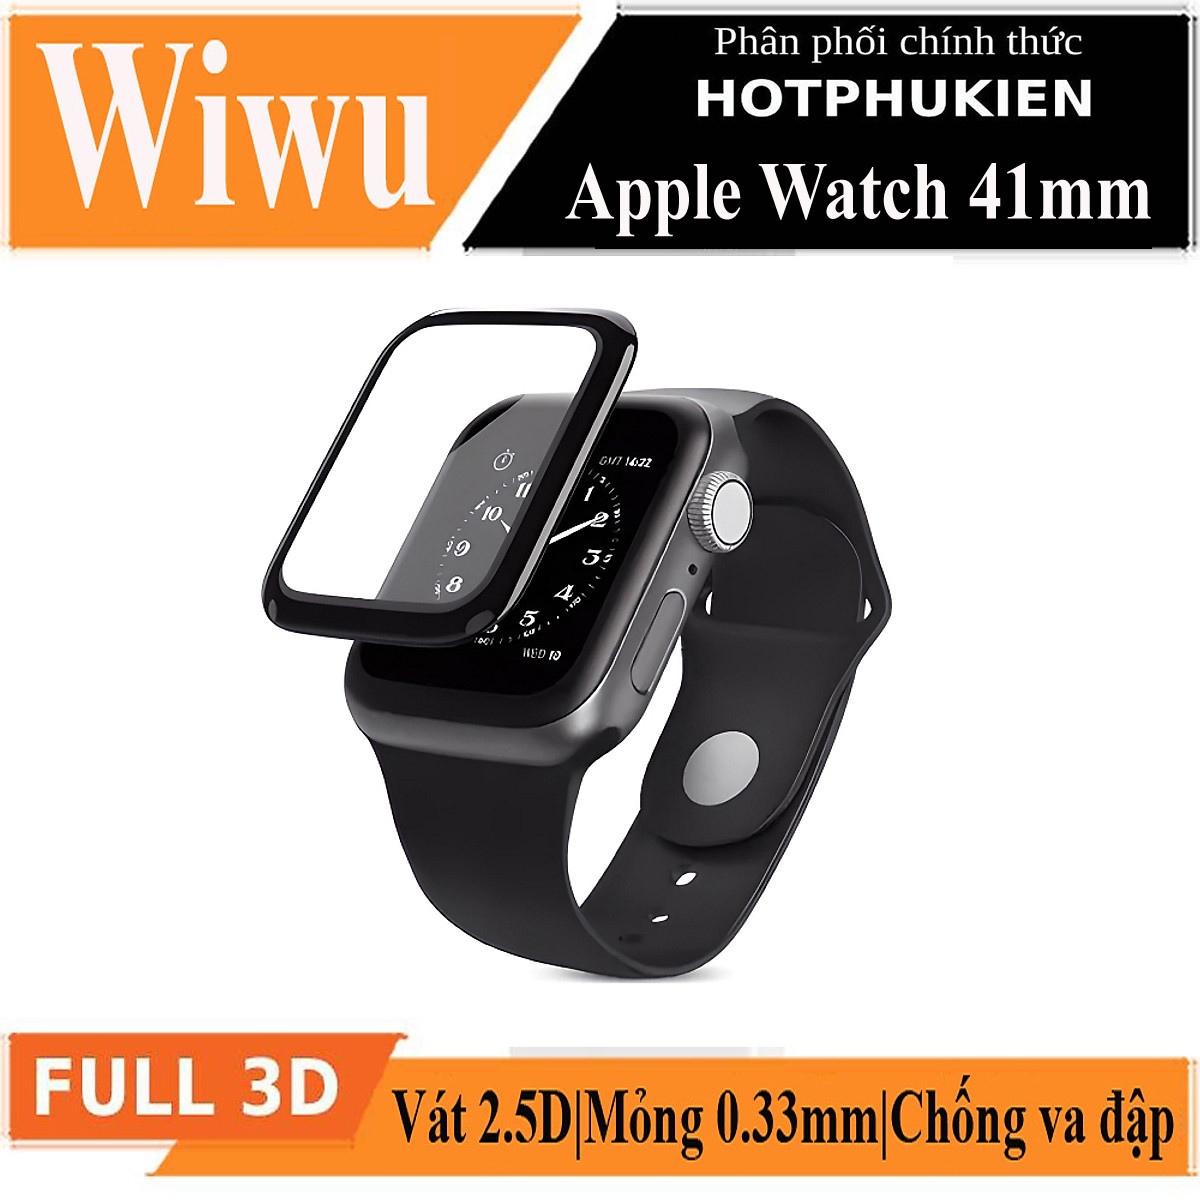 Bộ 2 miếng dán màn hình kính cường lực Full 3D cho Apple Watch 41mm hiệu WIWU iVista